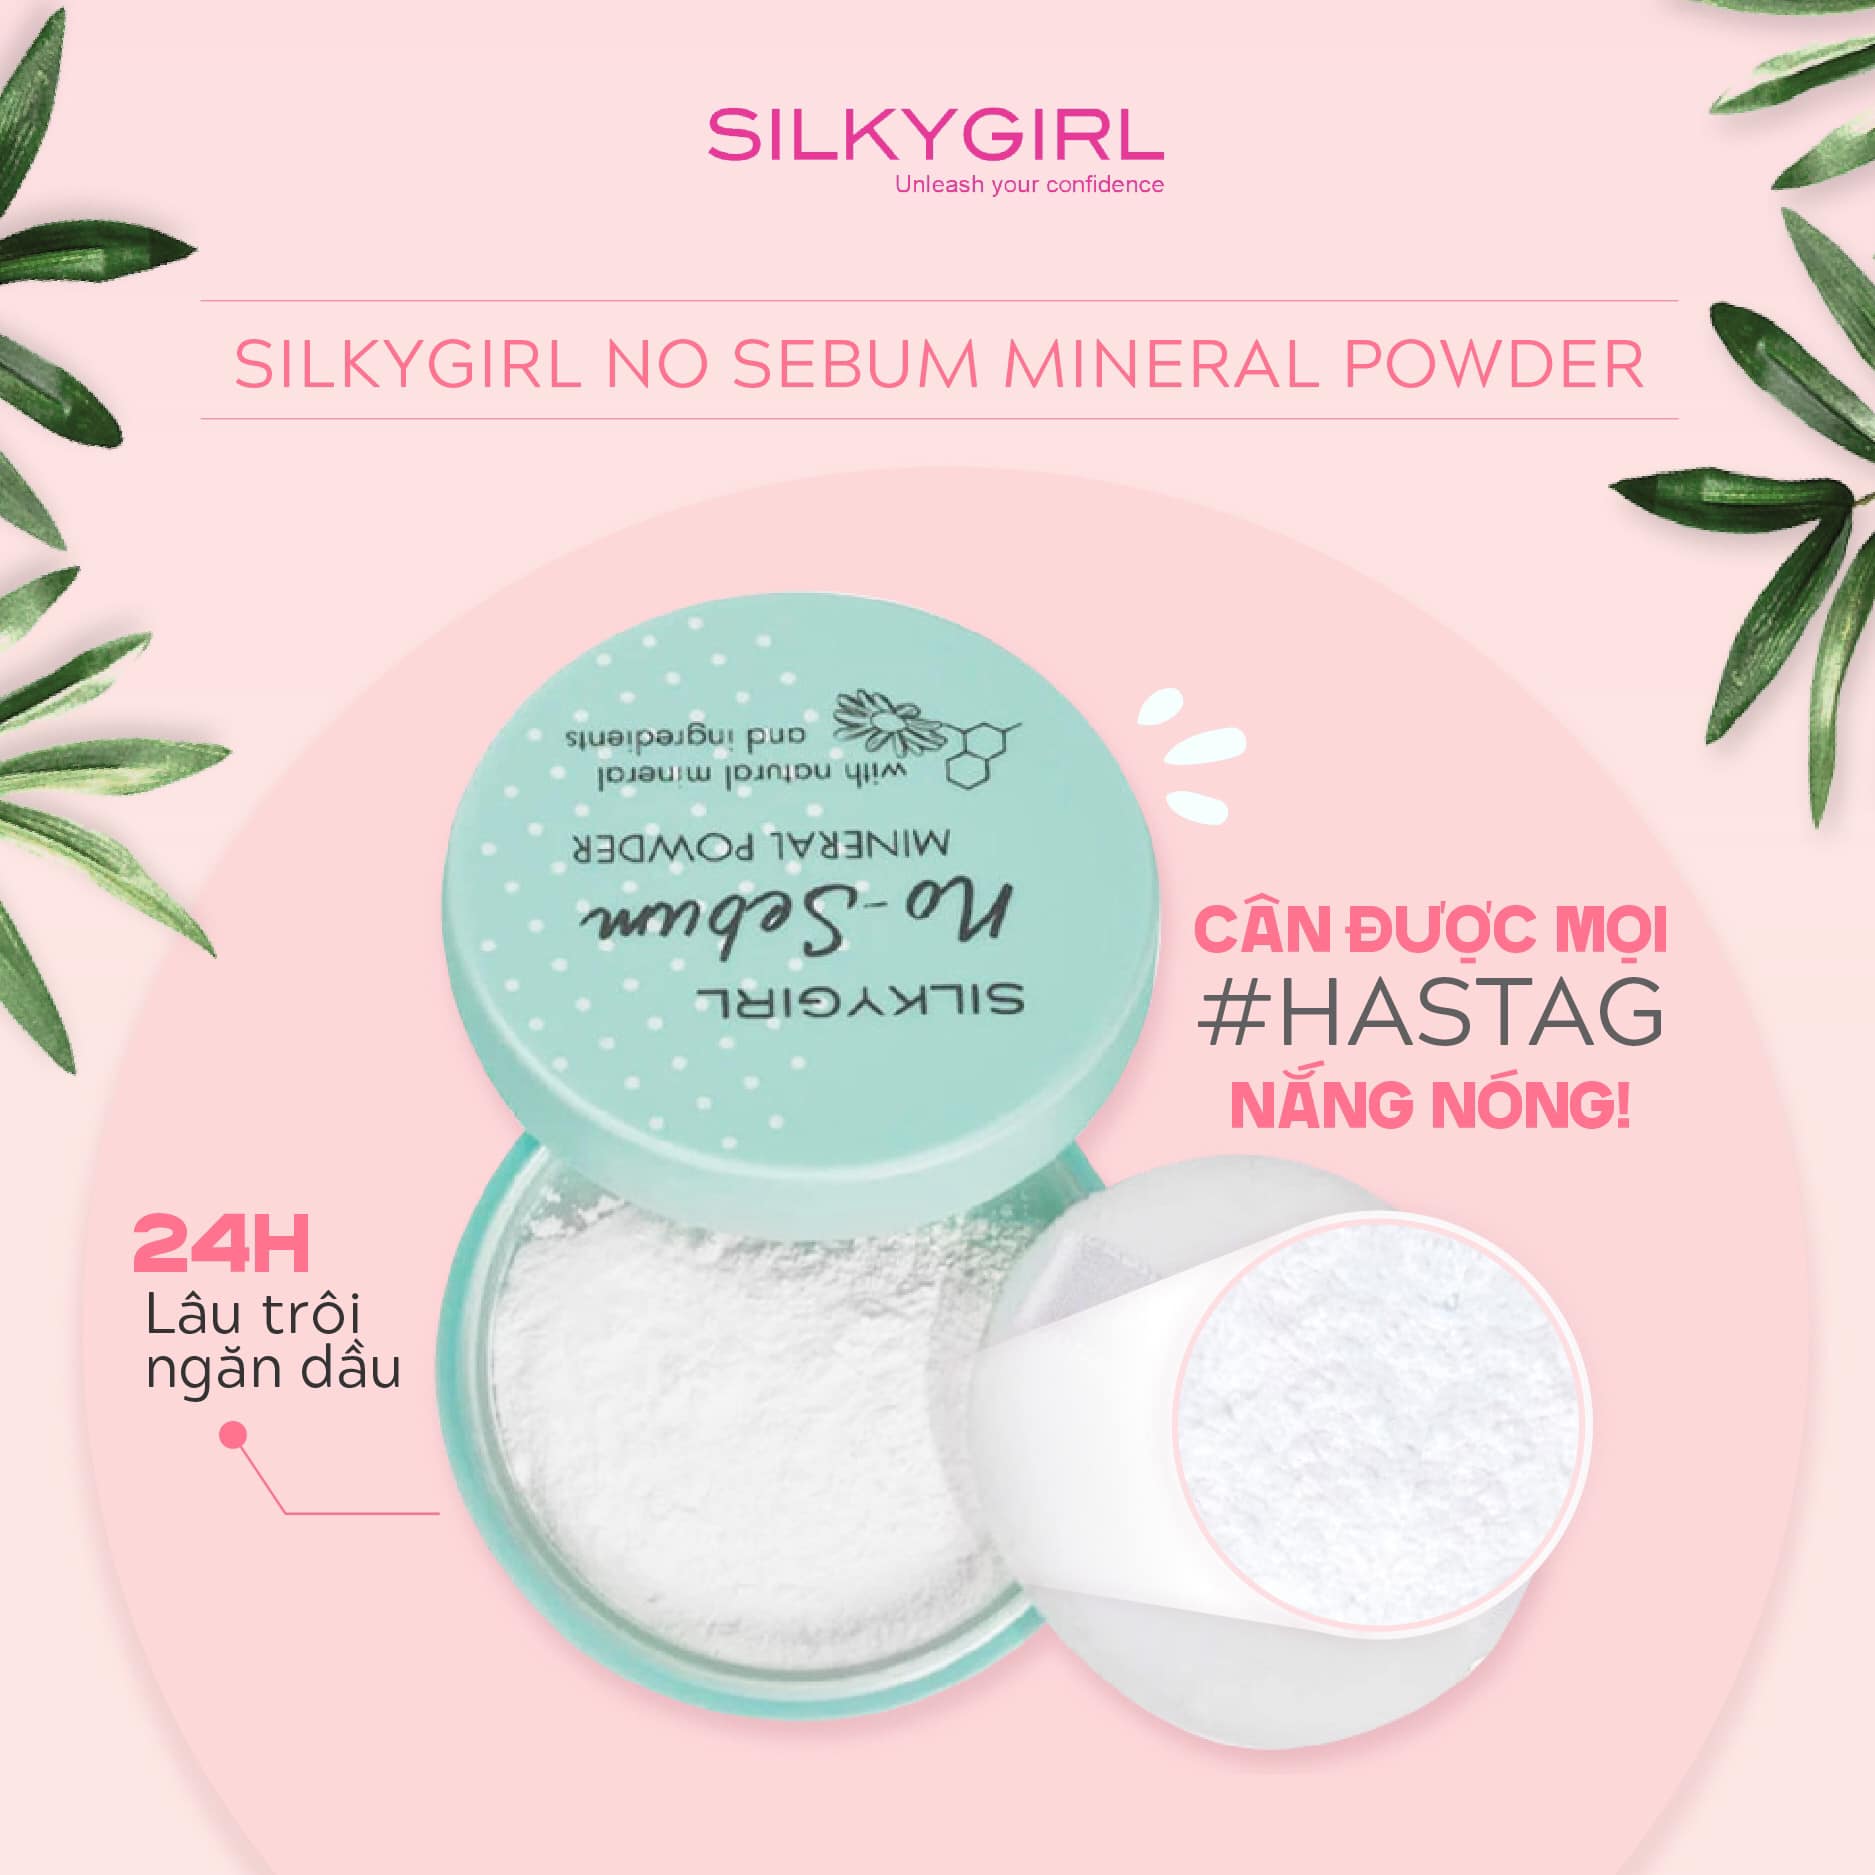 Phấn phủ khoáng dạng bột No-sebum Mineral Powder của thương hiệu SilkyGirl  